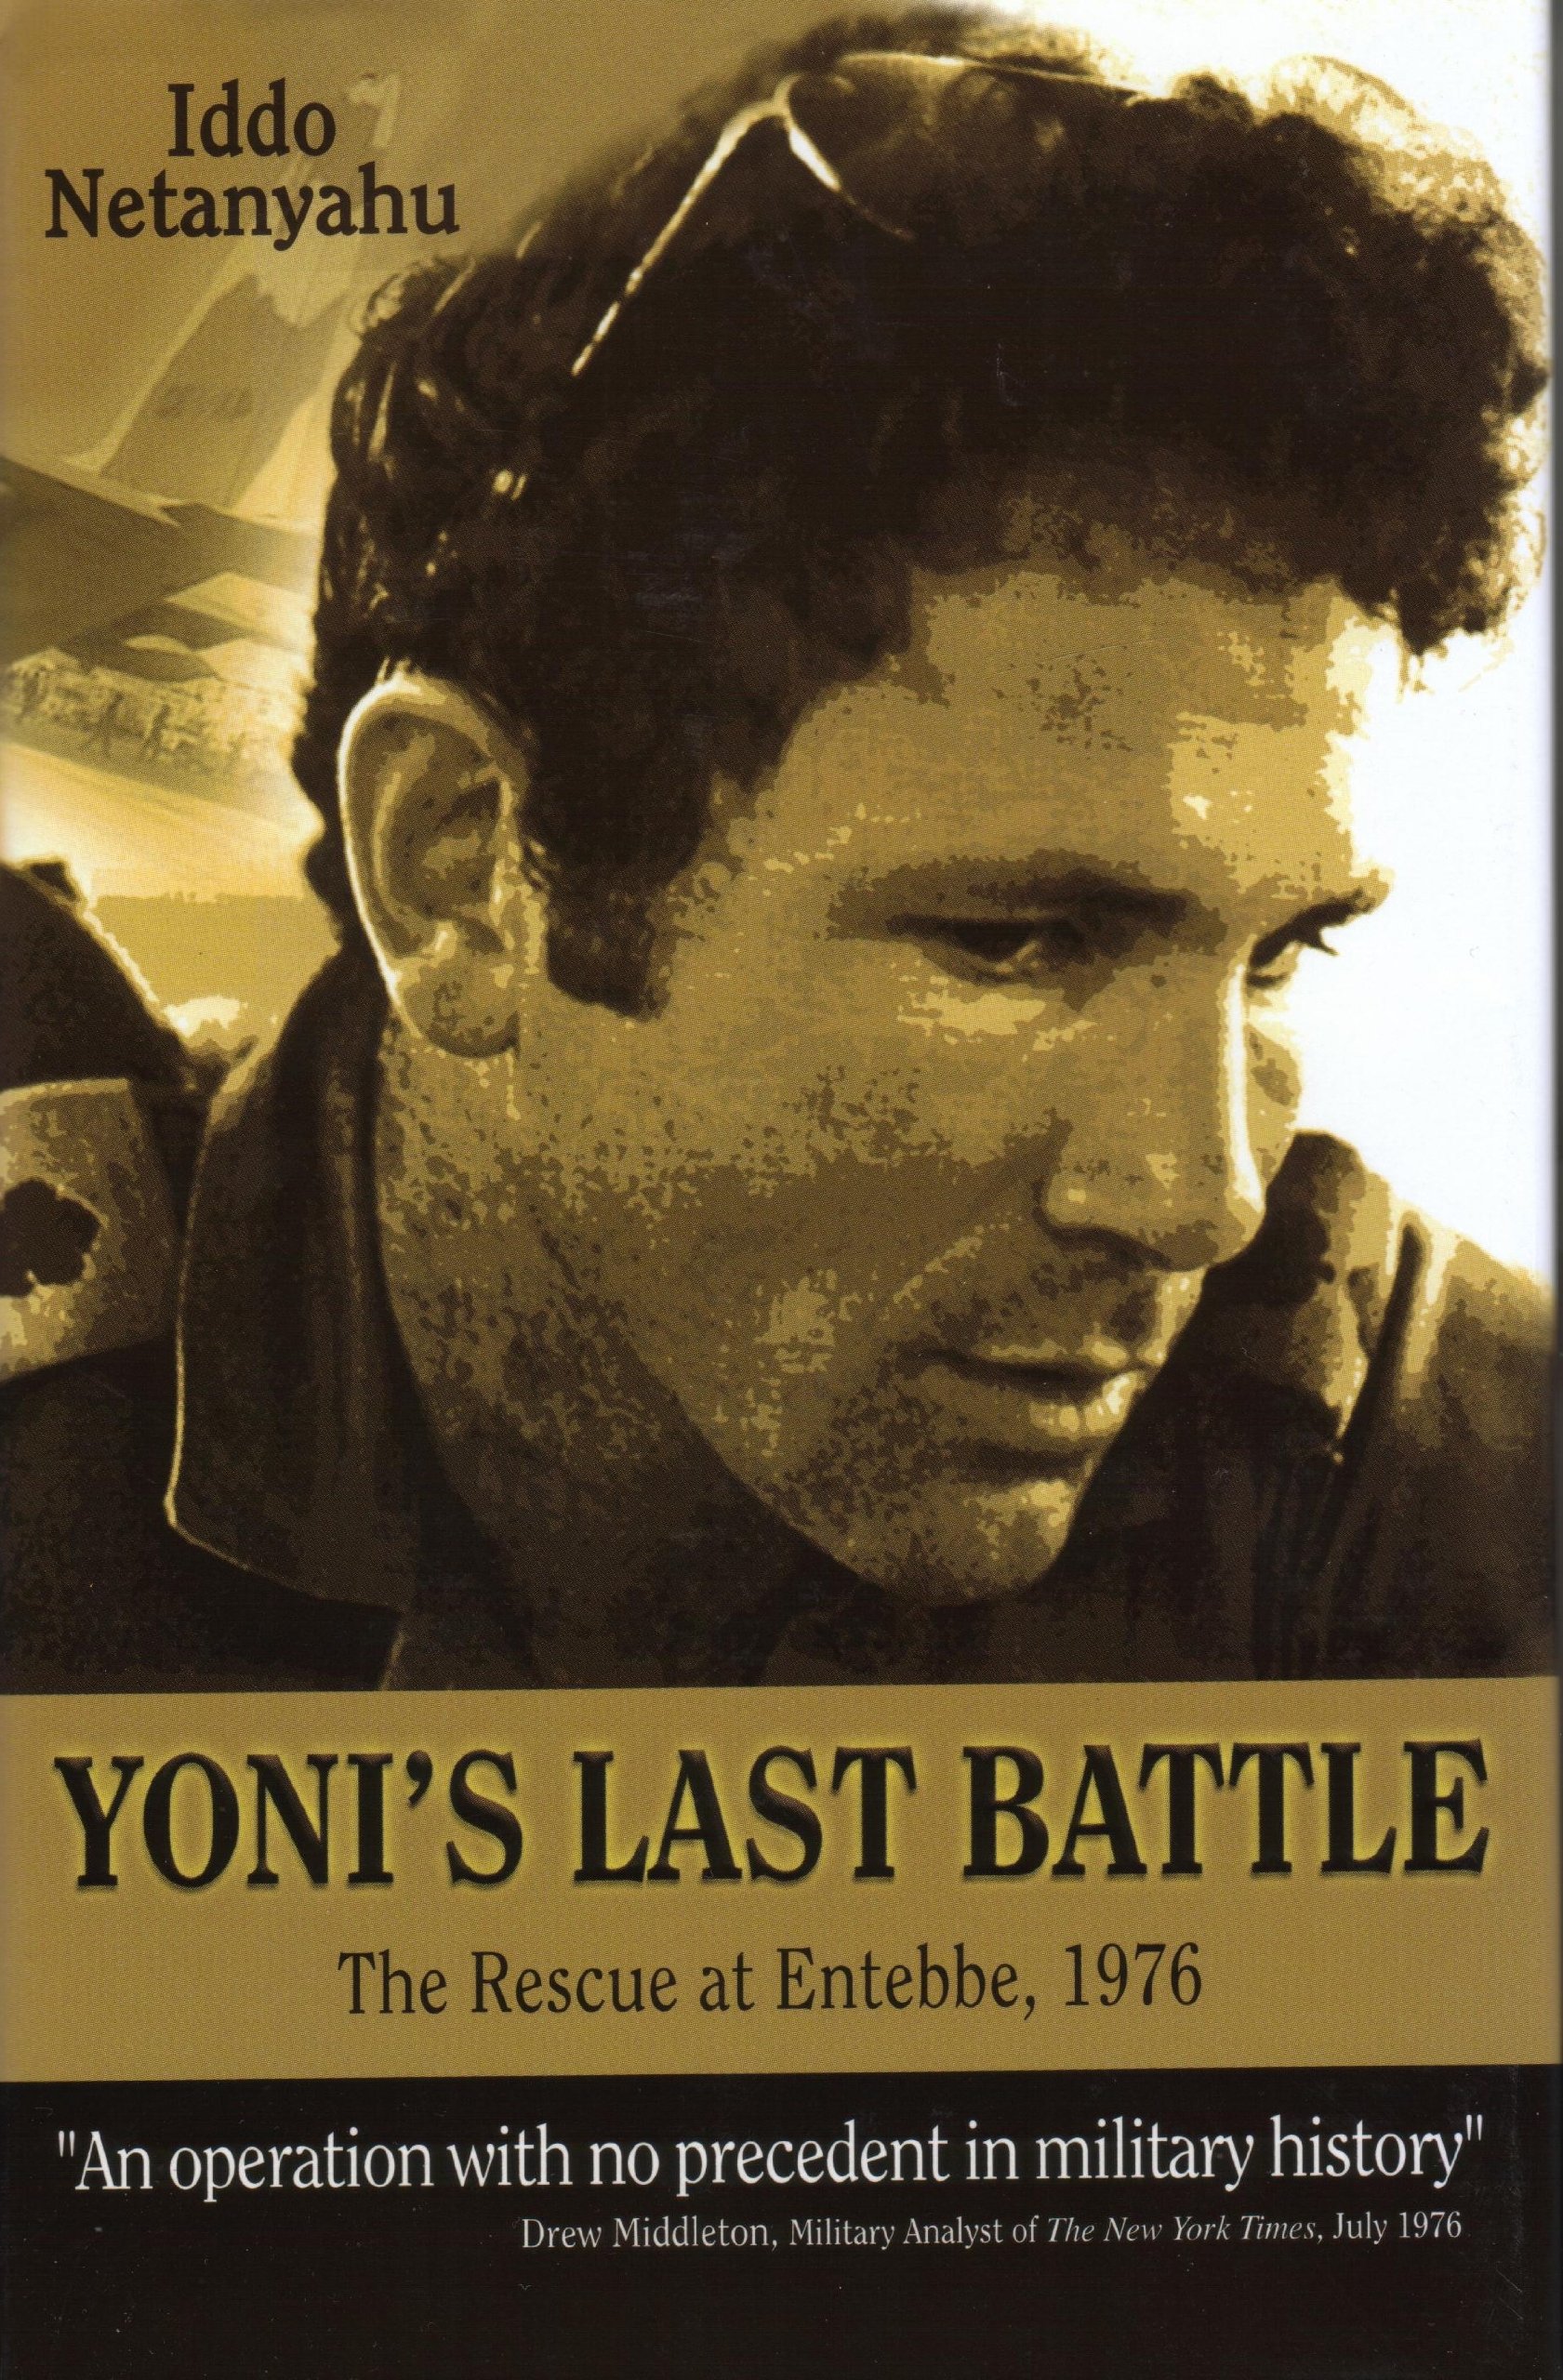 Yoni's last battle